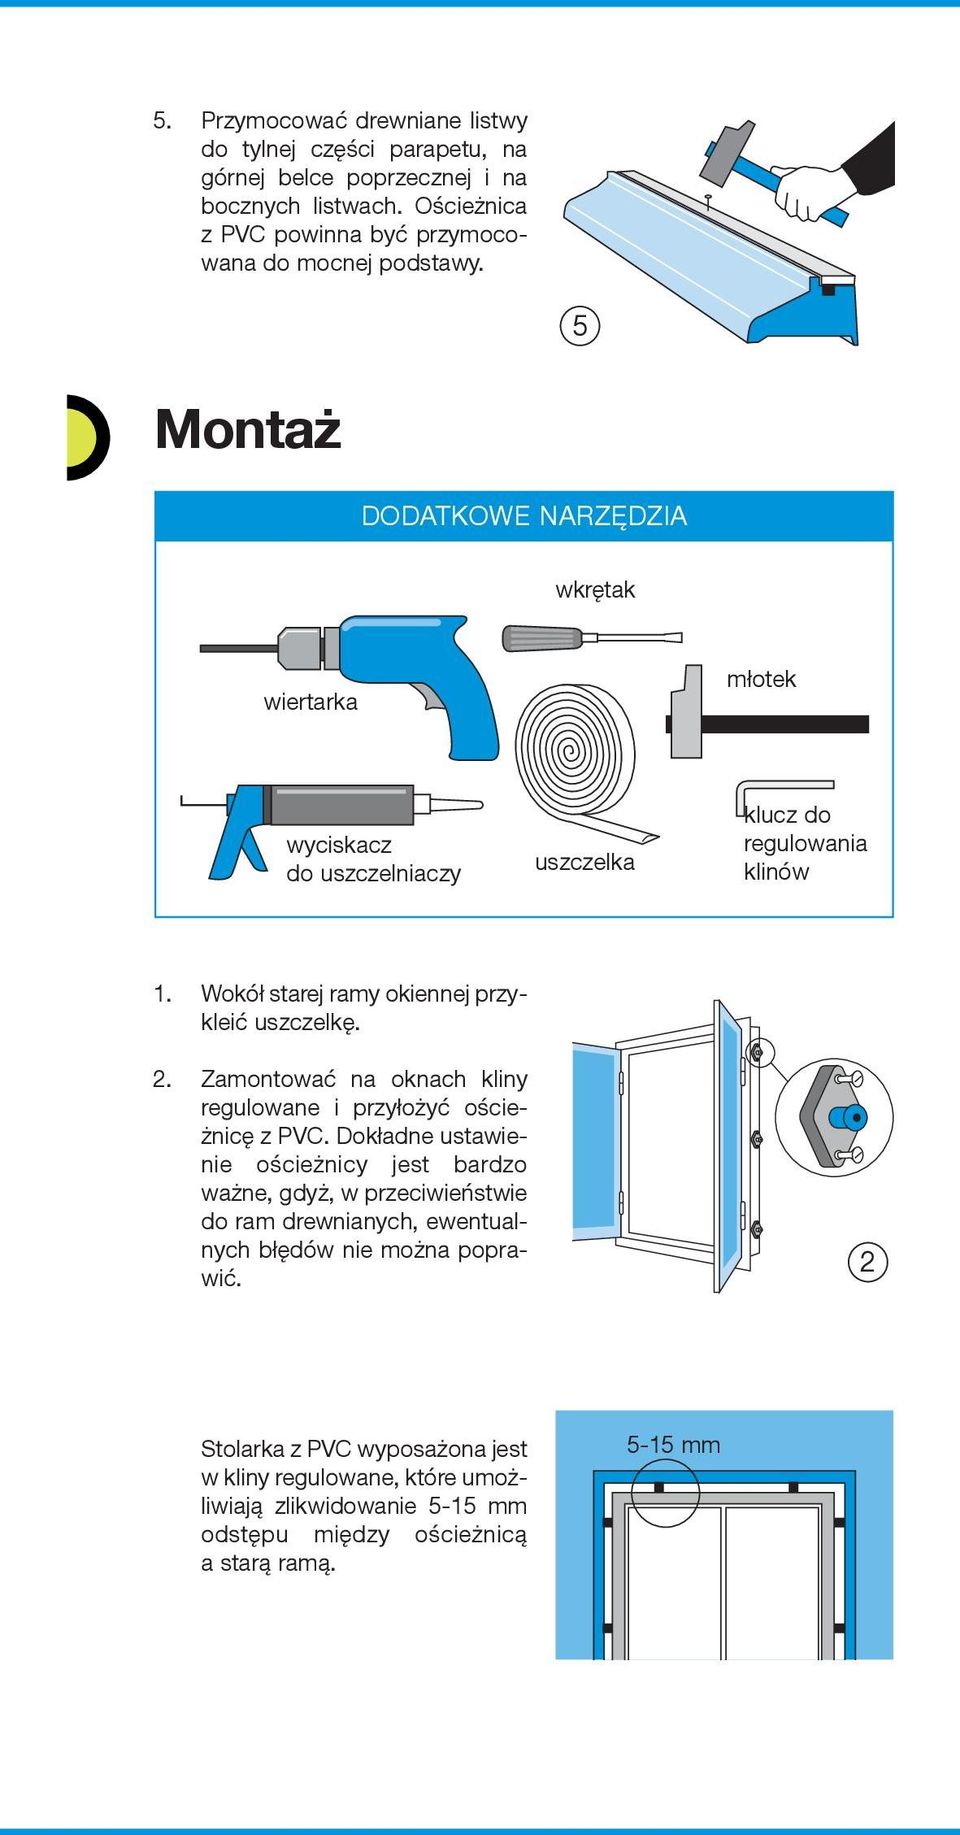 2. Zamontować na oknach kliny regulowane i przyłożyć ościeżnicę z PVC.